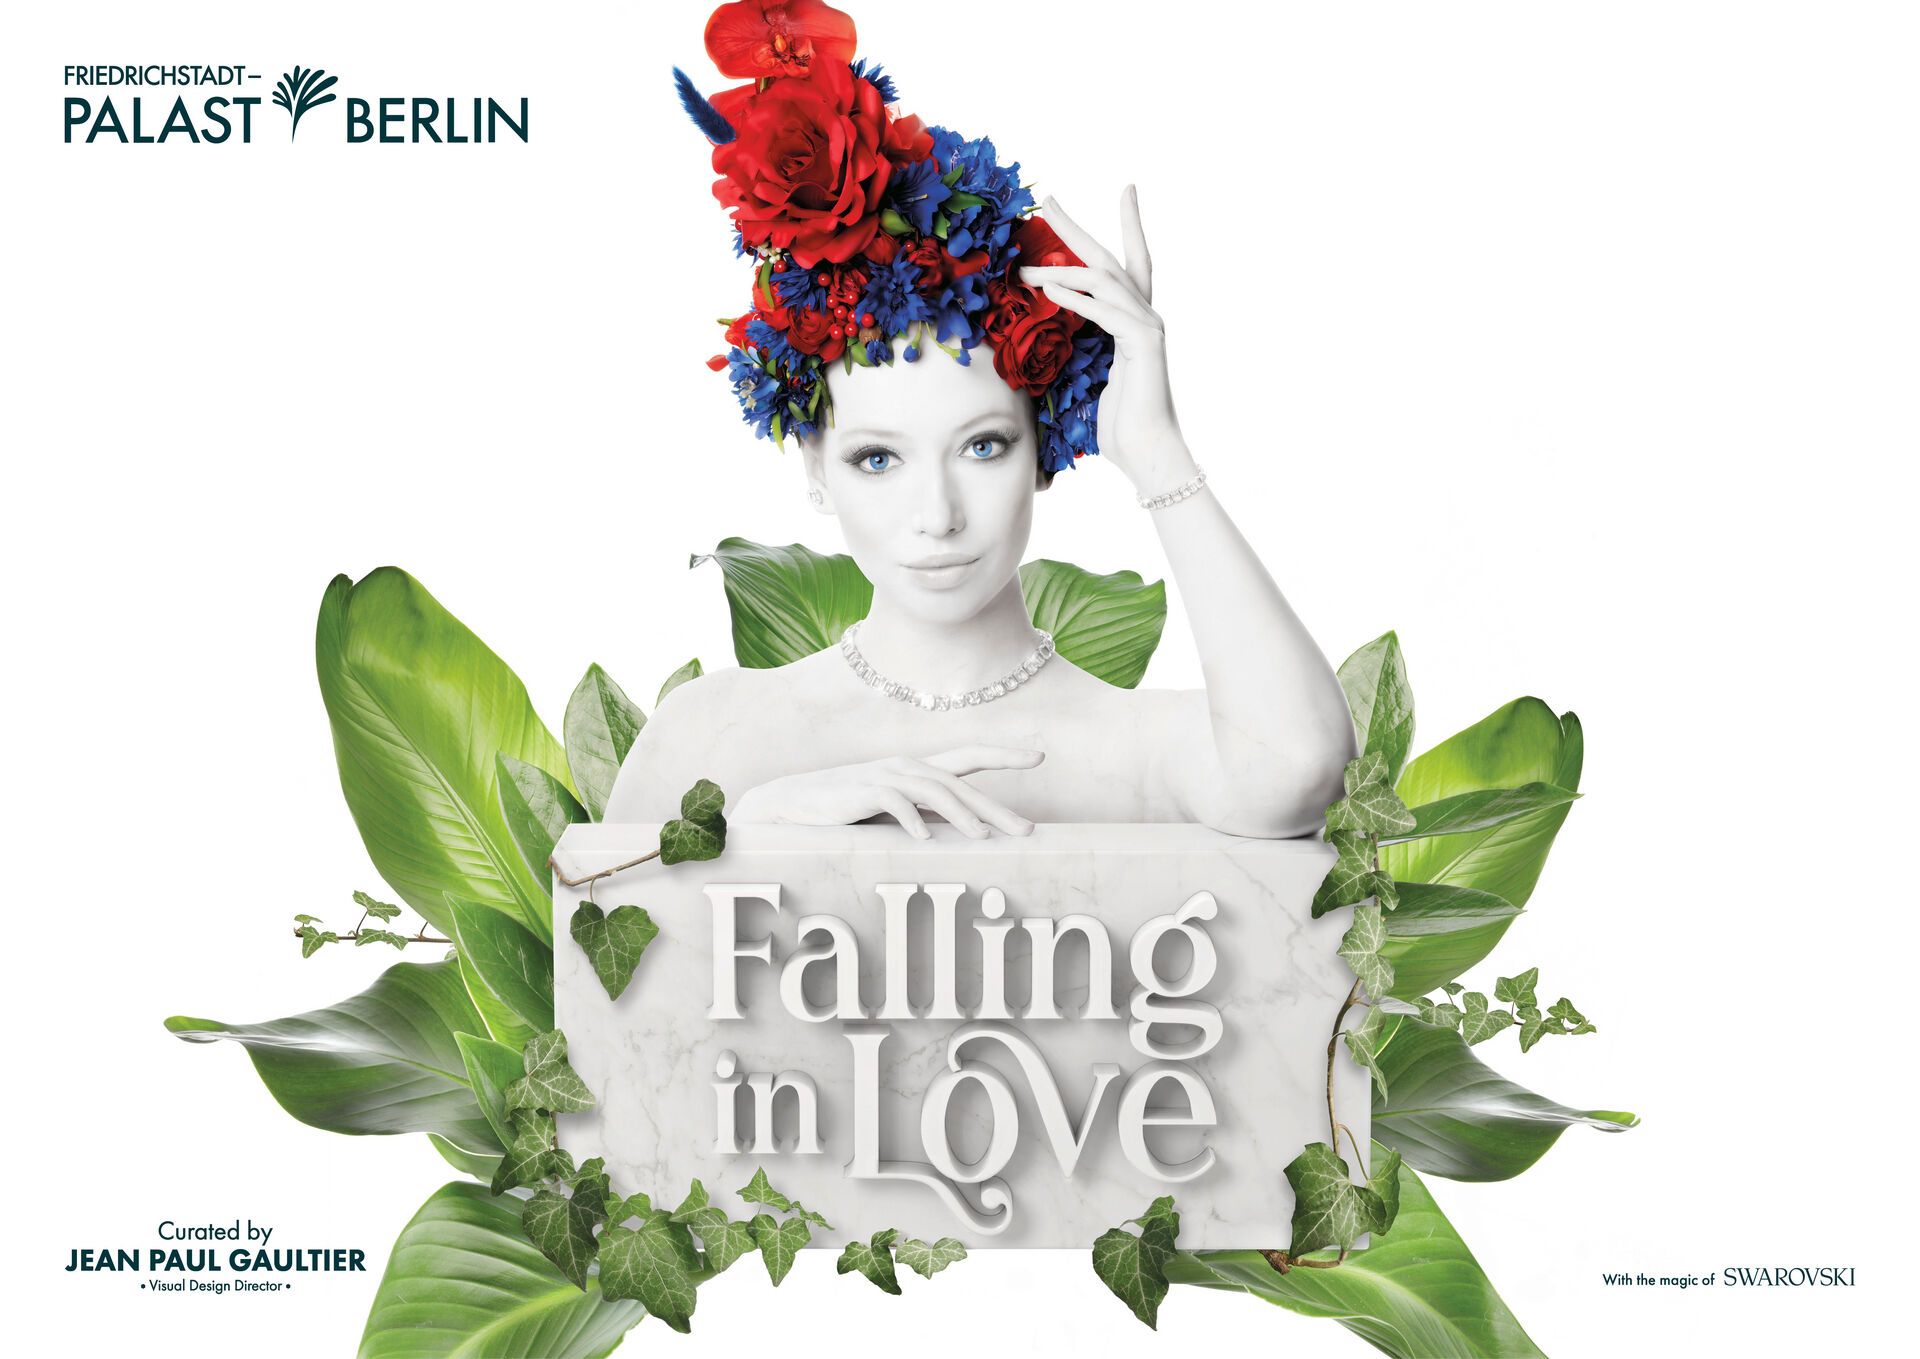 Leonardo Berlin Mitte inkl. Falling in Love im Friedrichstadt Palast